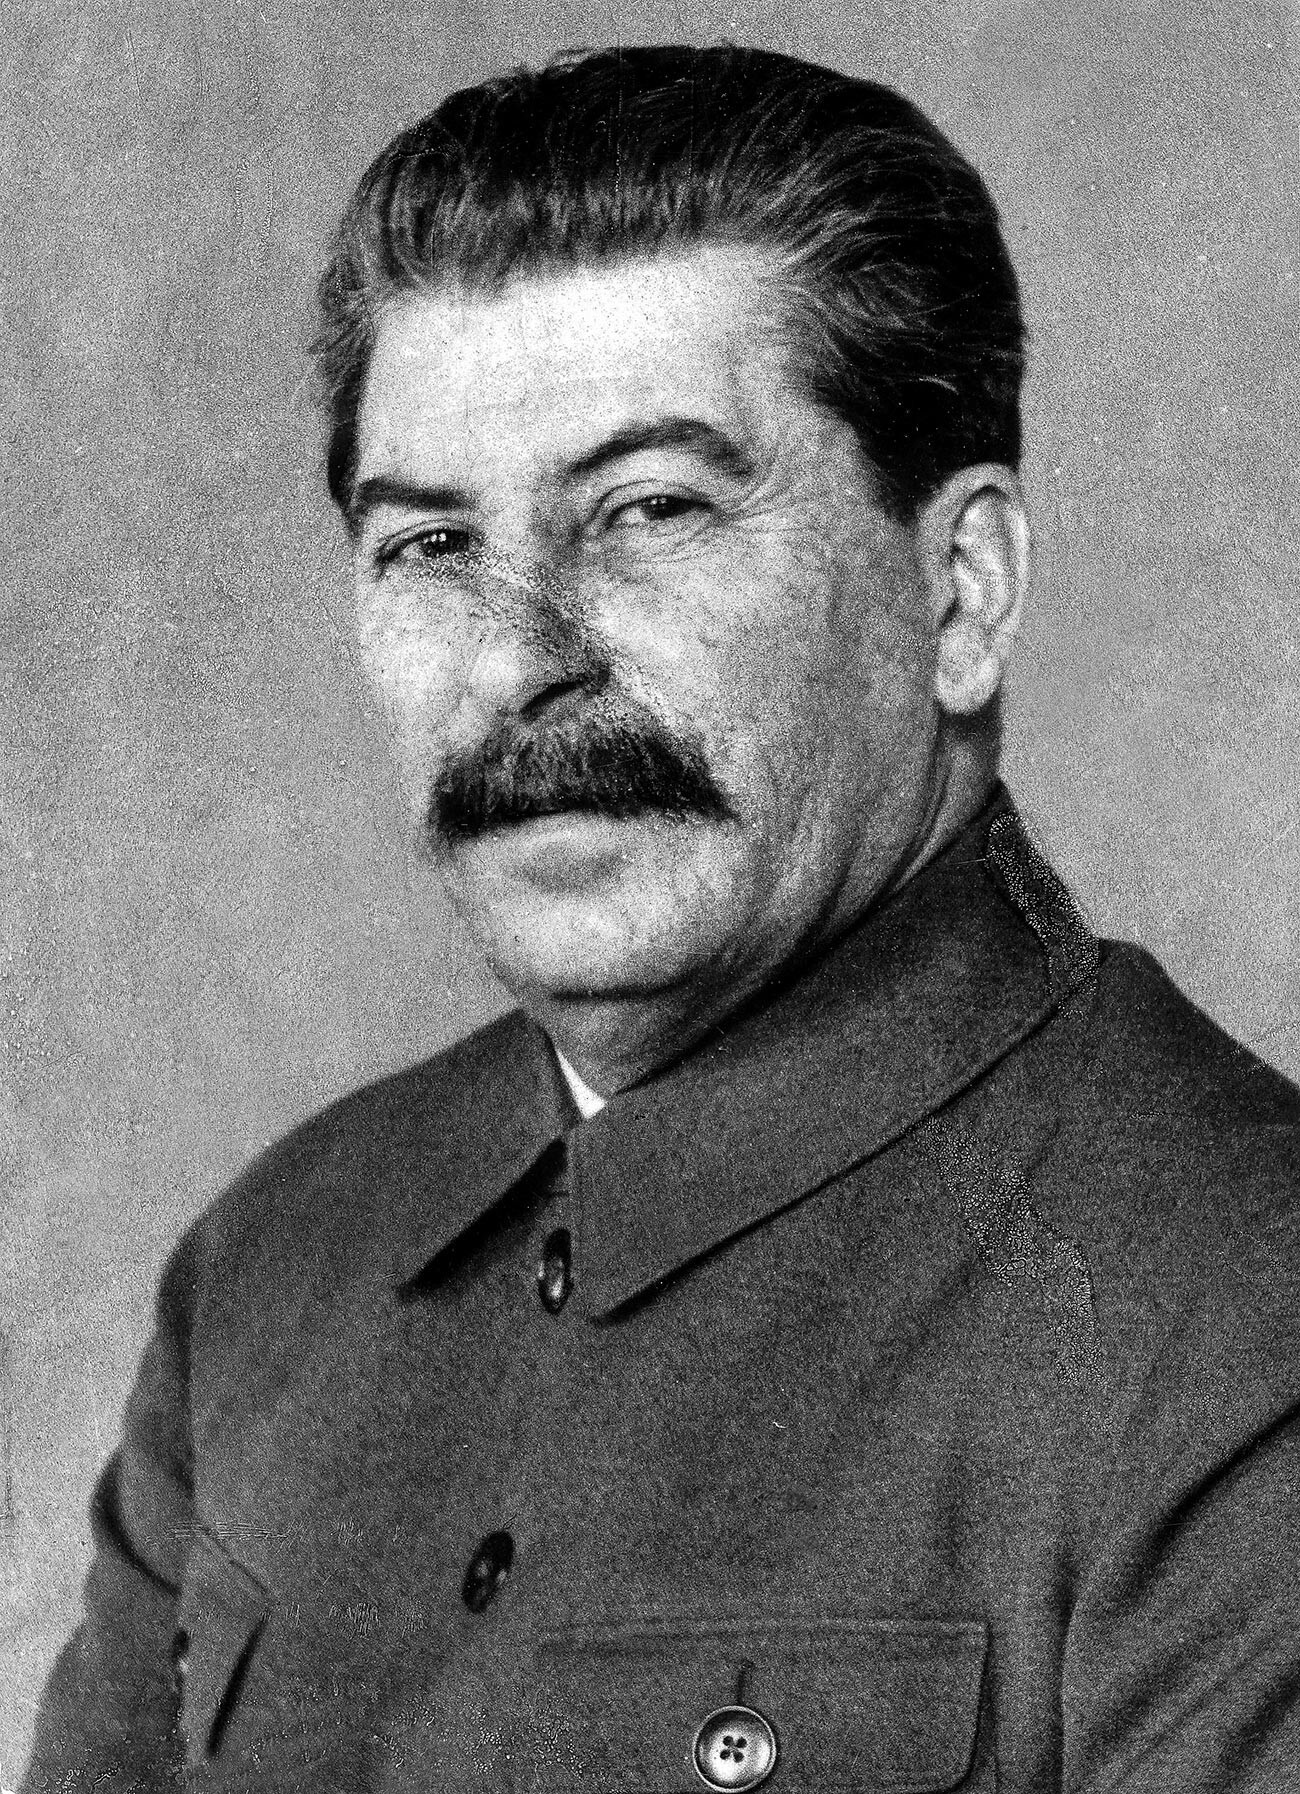 Esta es una de las raras fotos de Stalin en las que las marcas de viruela son evidentes en su rostro.
